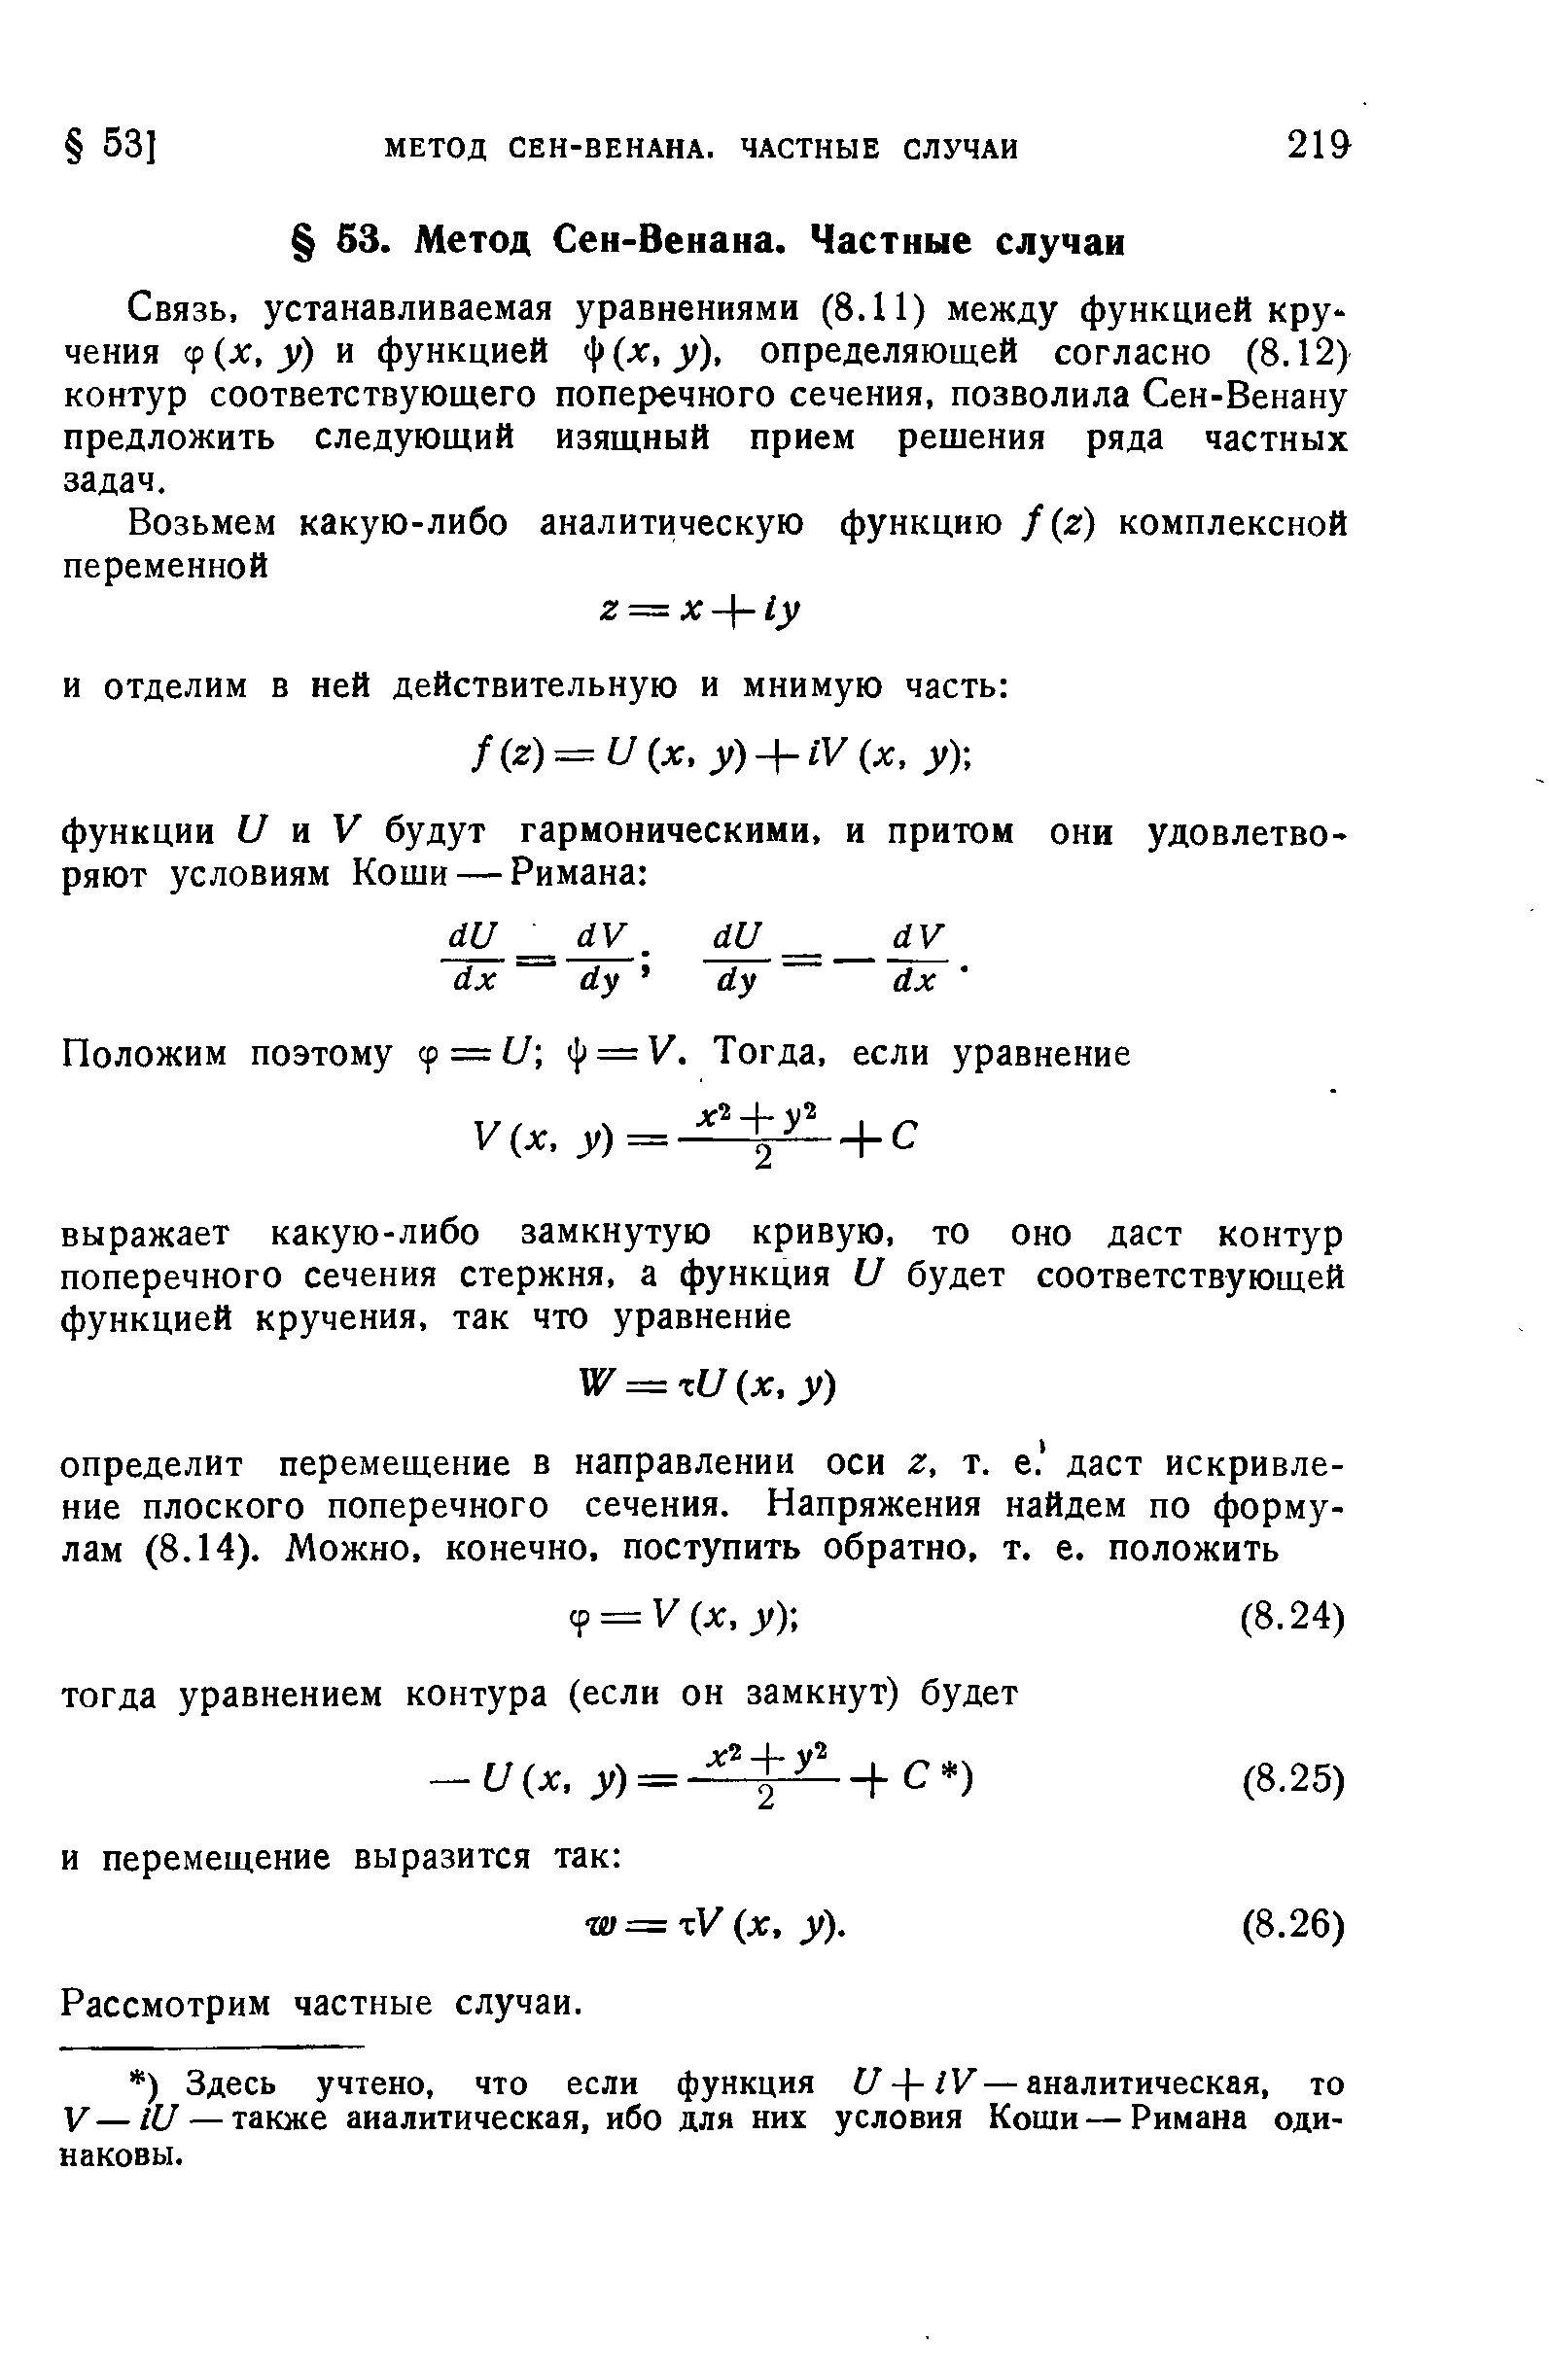 устанавливаемая уравнениями (8.11) между функцией кручения ср(х, у) и функцией Sf(x,y), определяющей согласно (8.12) контур соответствующего поперечного сечения, позволила Сен-Венану предложить следующий изящный прием решения ряда частных задач.
